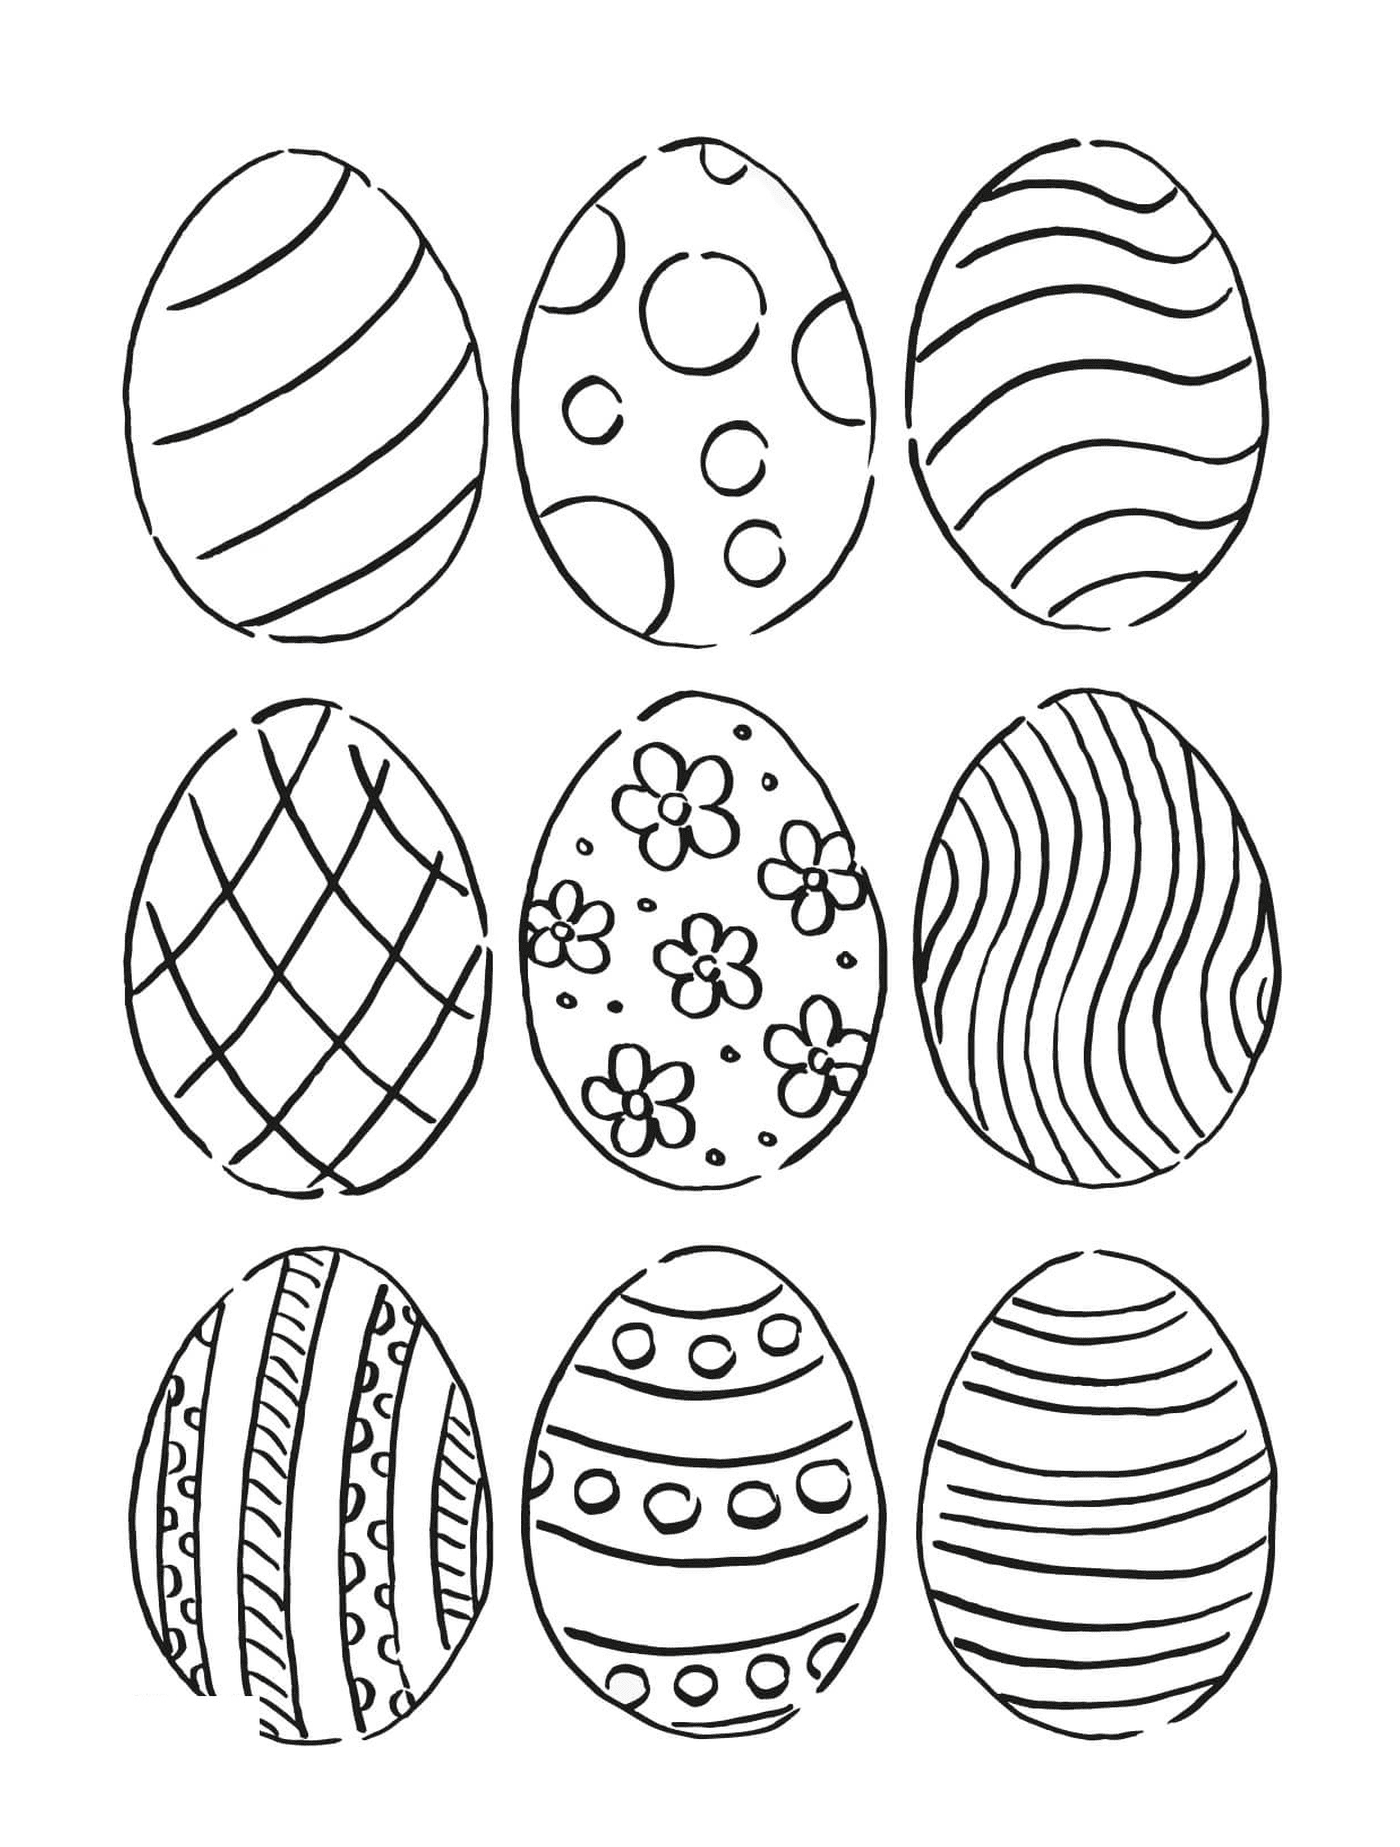  Juego de nueve huevos con diferentes patrones 